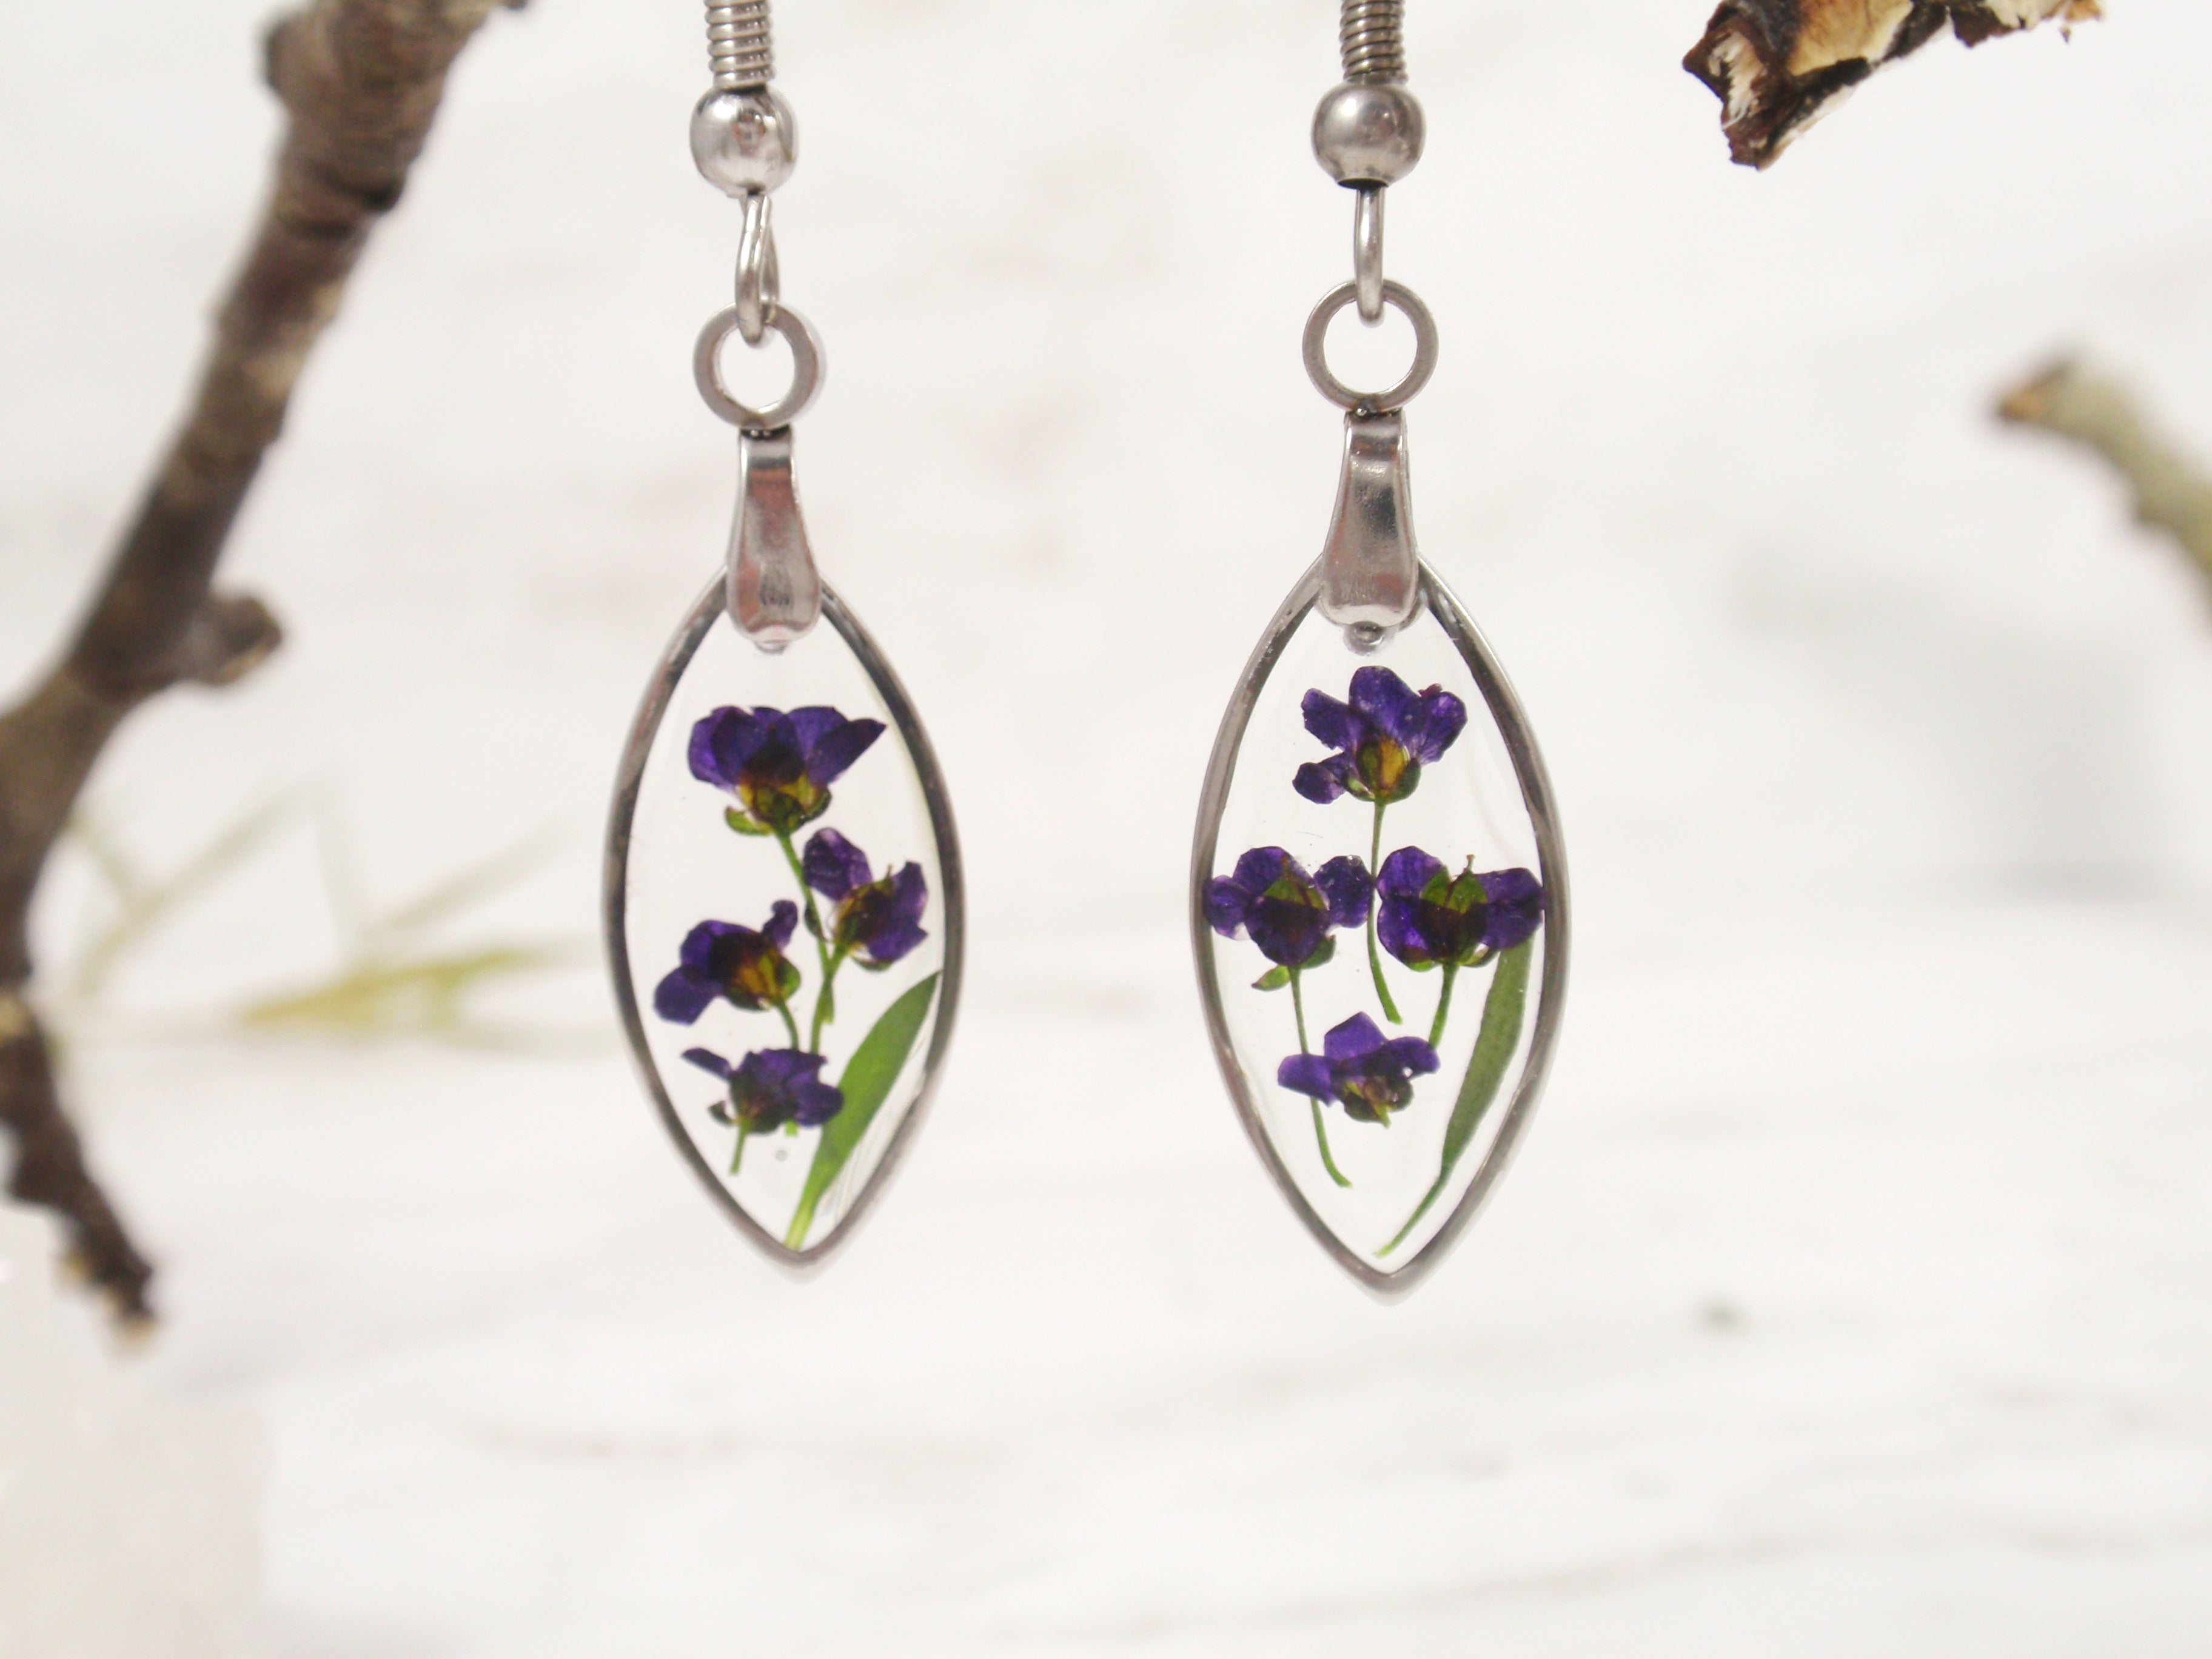 diy resin flower earrings/making simple and beautiful resin earrings/uv  resin jewelry/drop earrings - YouTube